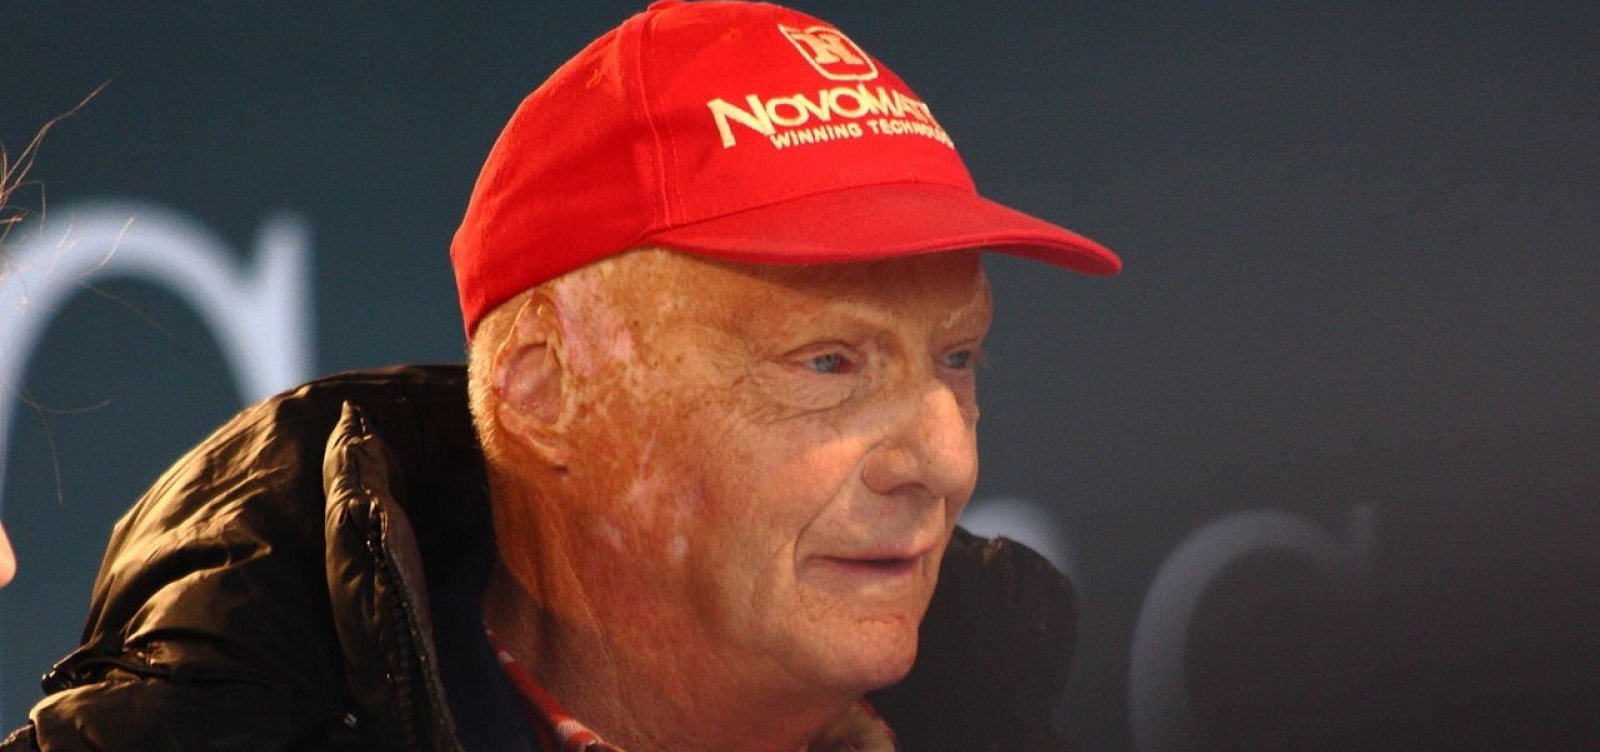 [TricampeÃ£o da FÃ³rmula 1, Niki Lauda morre aos 70 anos]